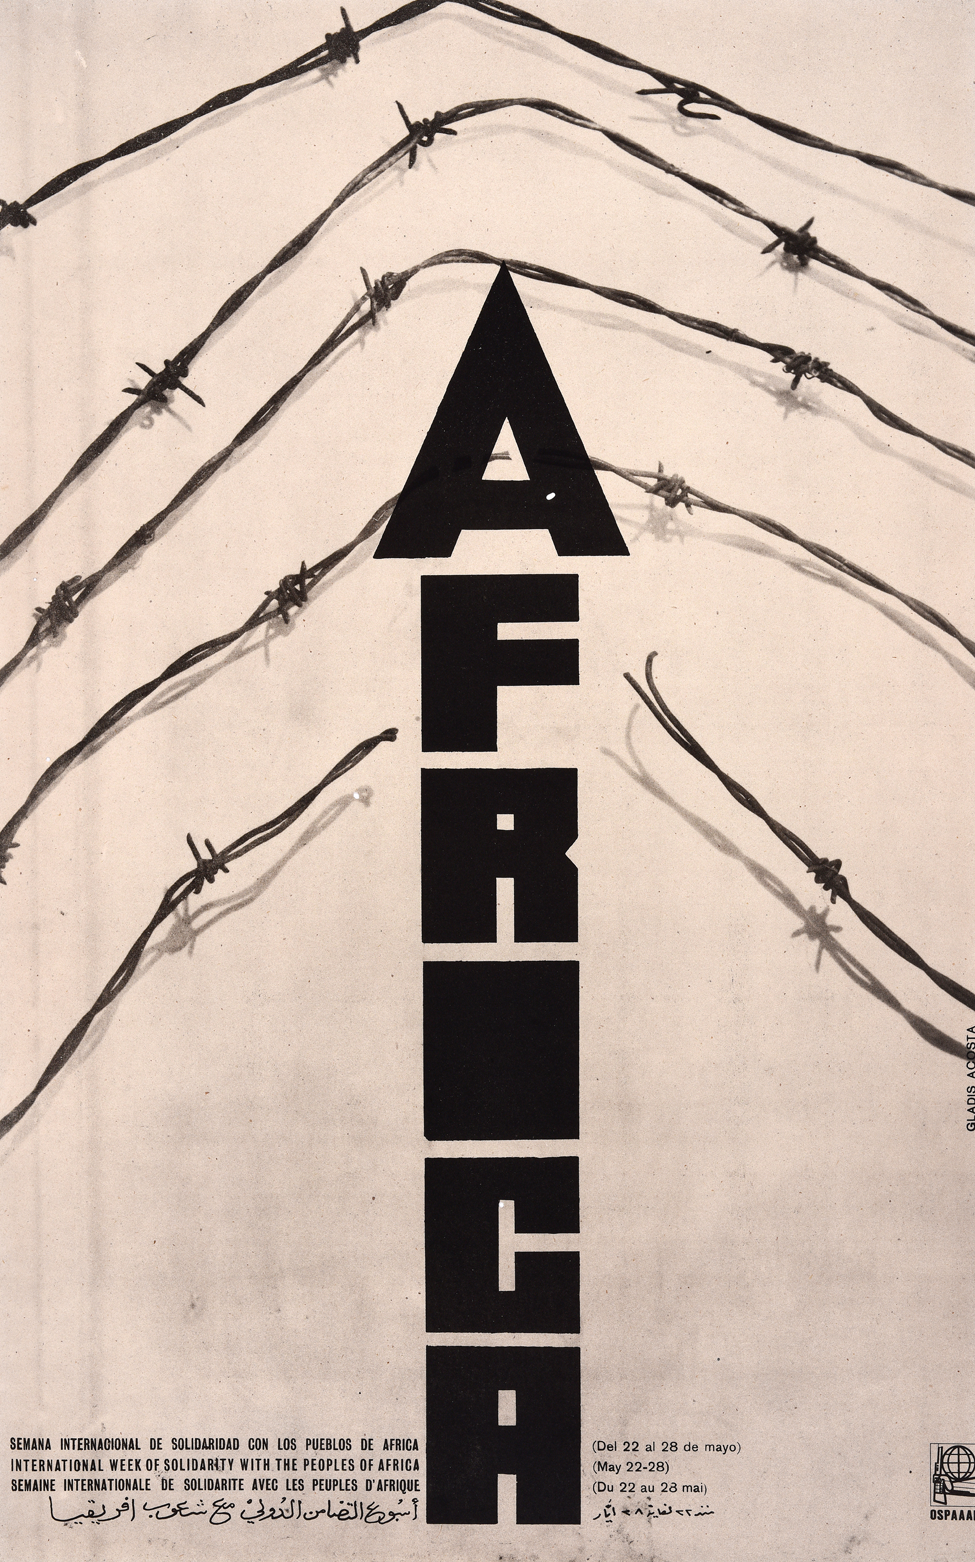 الأسبوع الدولي للتضامن مع شعوب أفريقيا - عام 1970